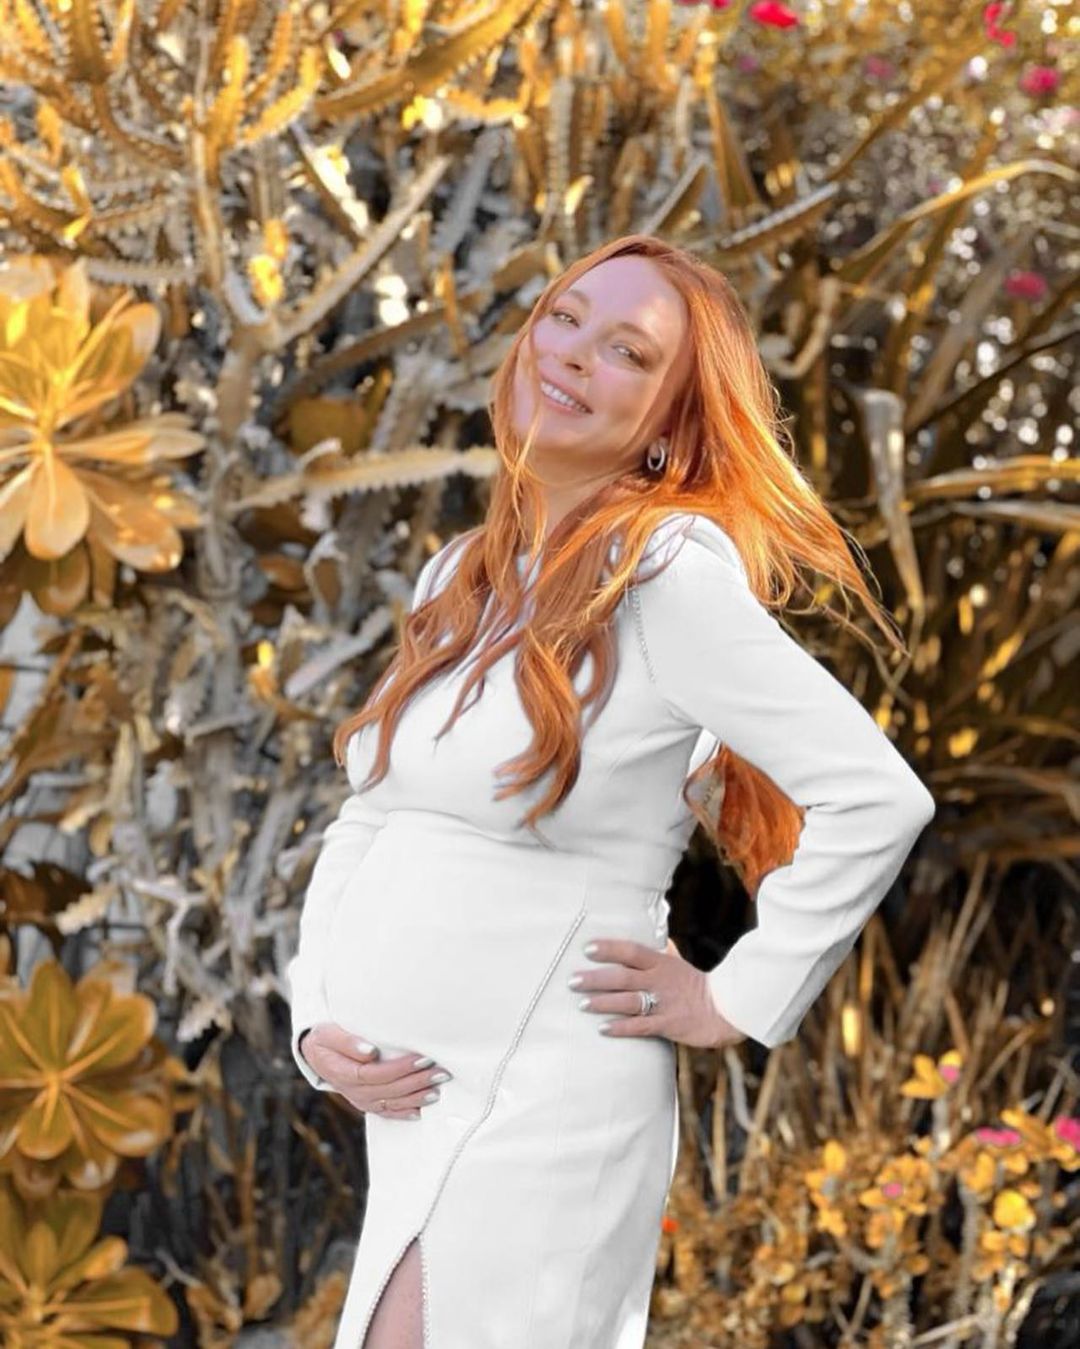 FOTOS Lindsay Lohan se recuesta con su creciente bulto! - Photo 4